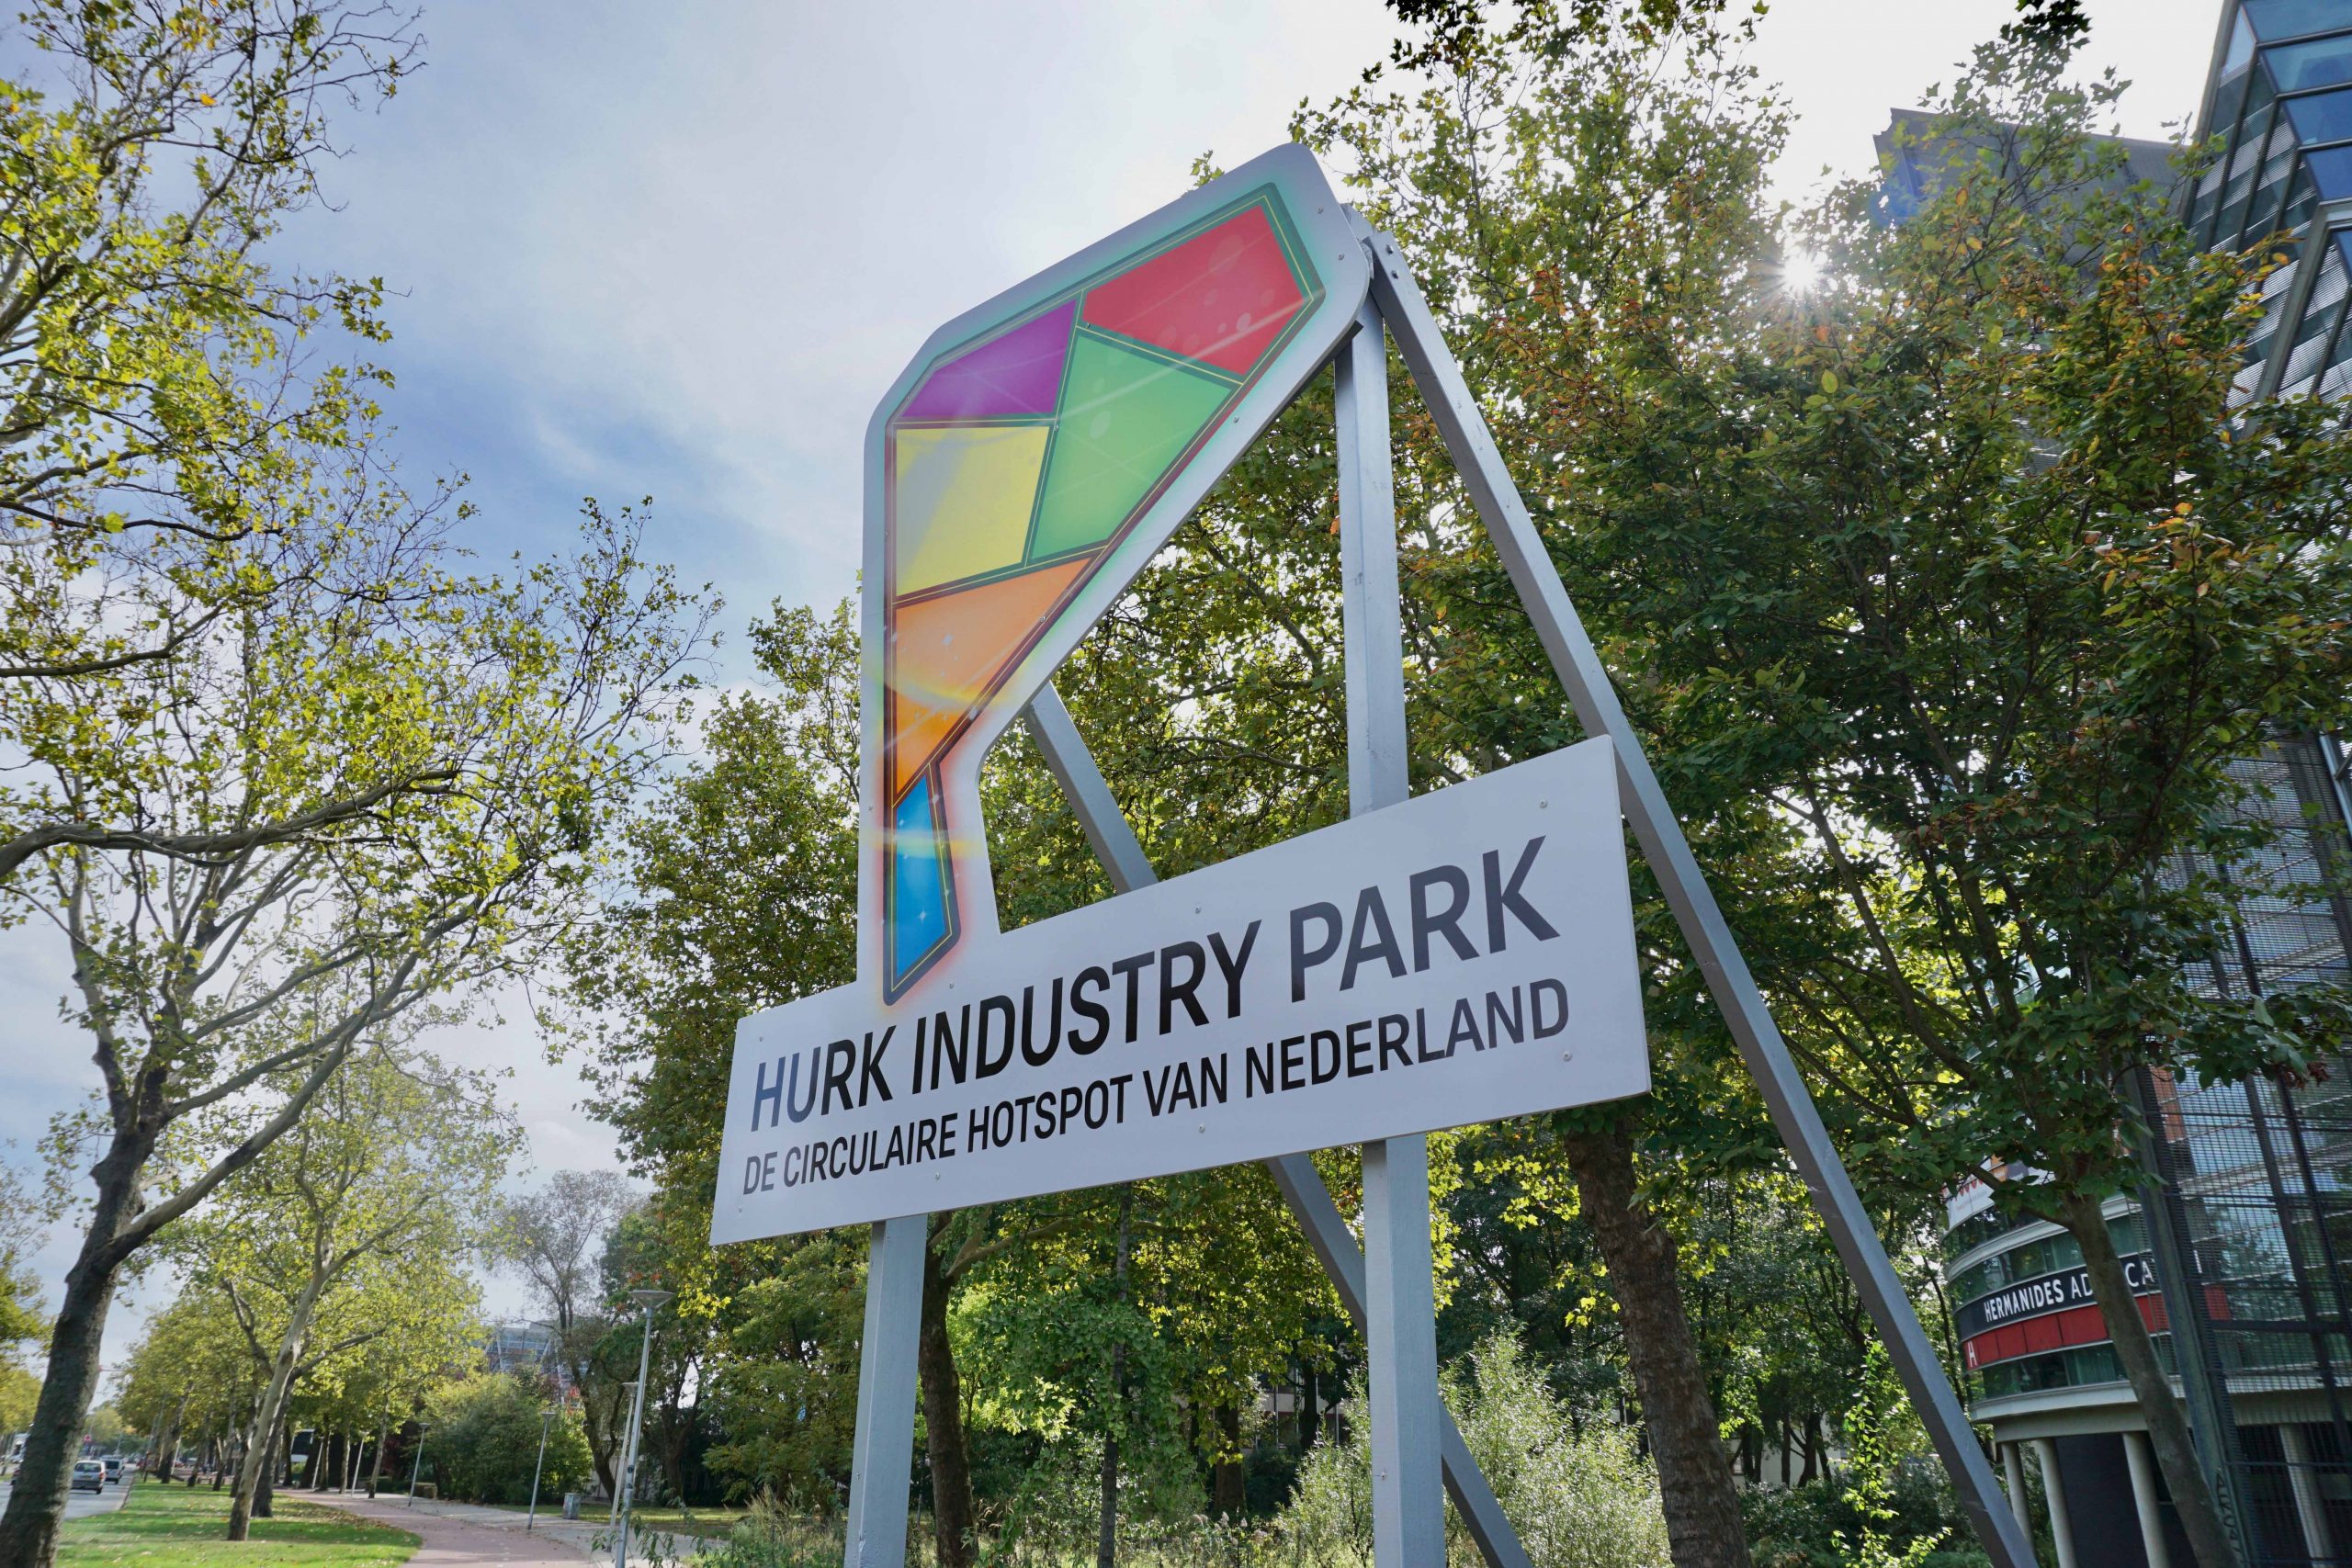 Hurk Industry Park